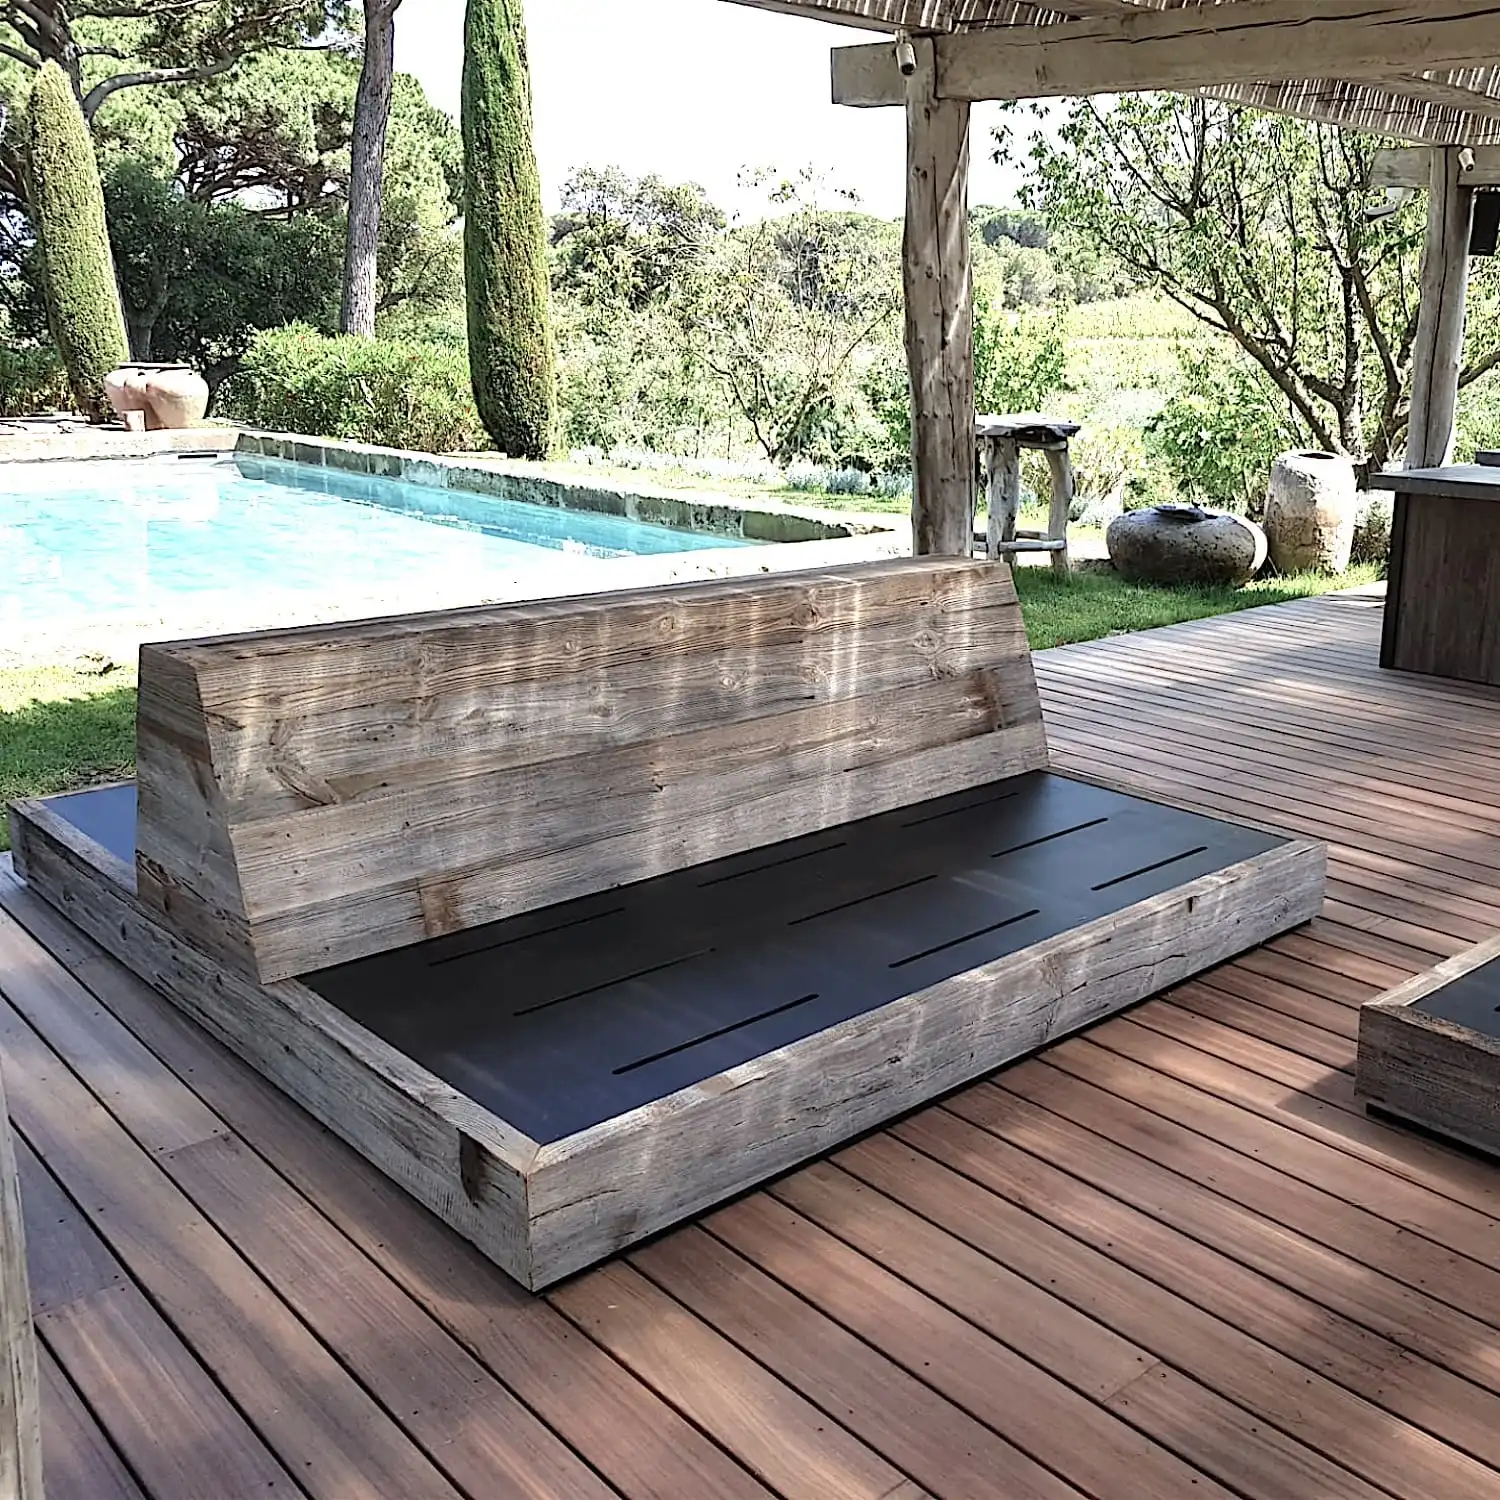  Banc d'extérieur en bois sur une terrasse au bord d'une piscine, entouré d'une verdure luxuriante et agrémenté d'un panneau 3 plis vieux bois. 